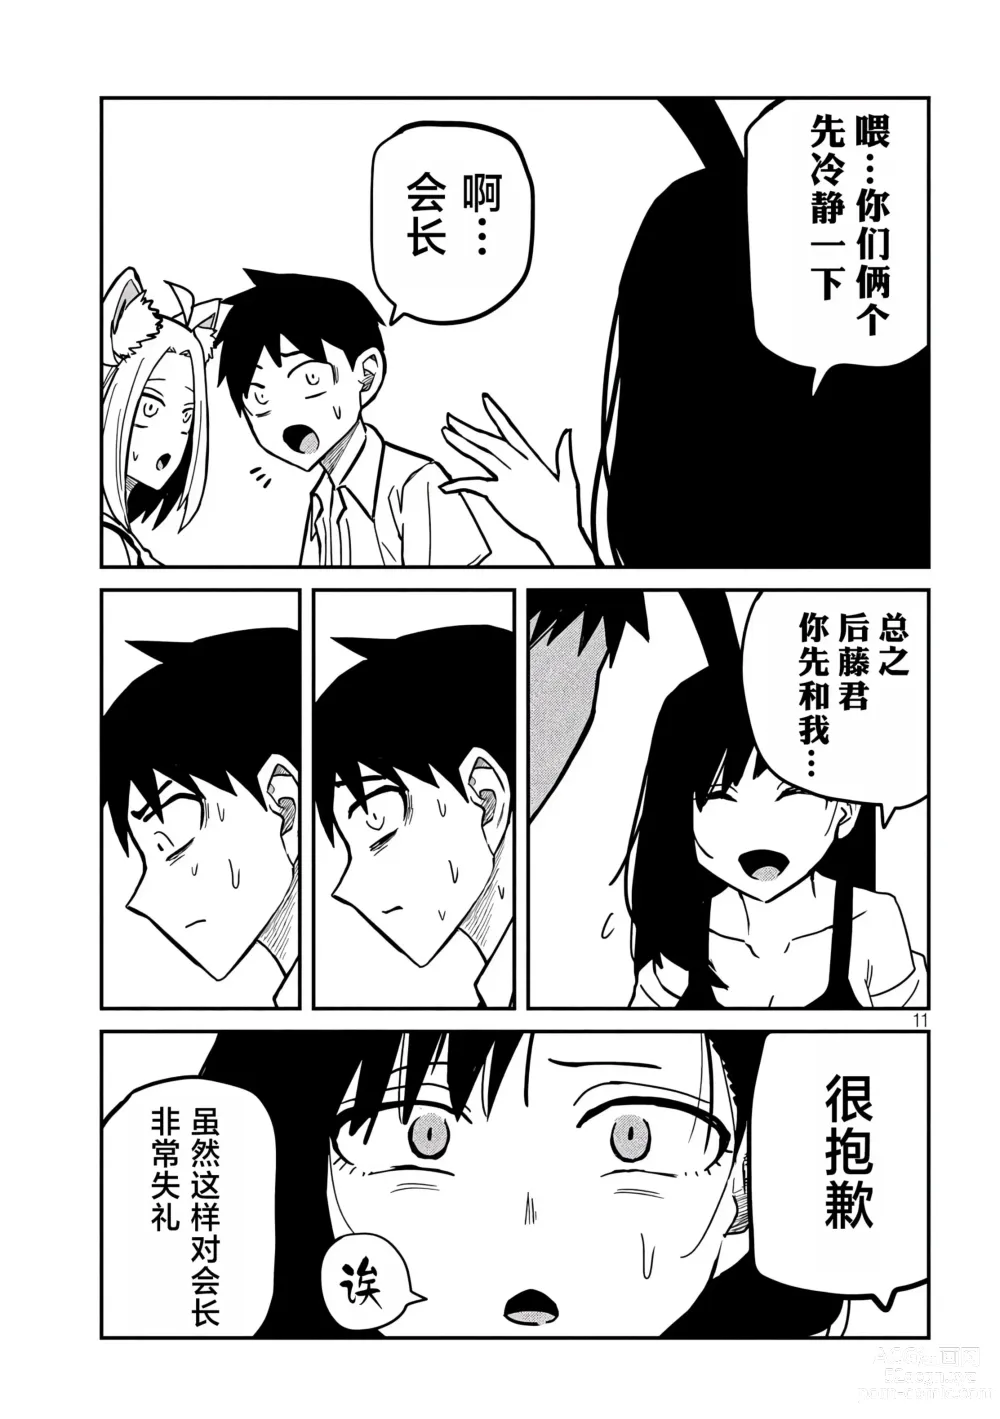 Page 531 of manga 喜欢来者不拒的你